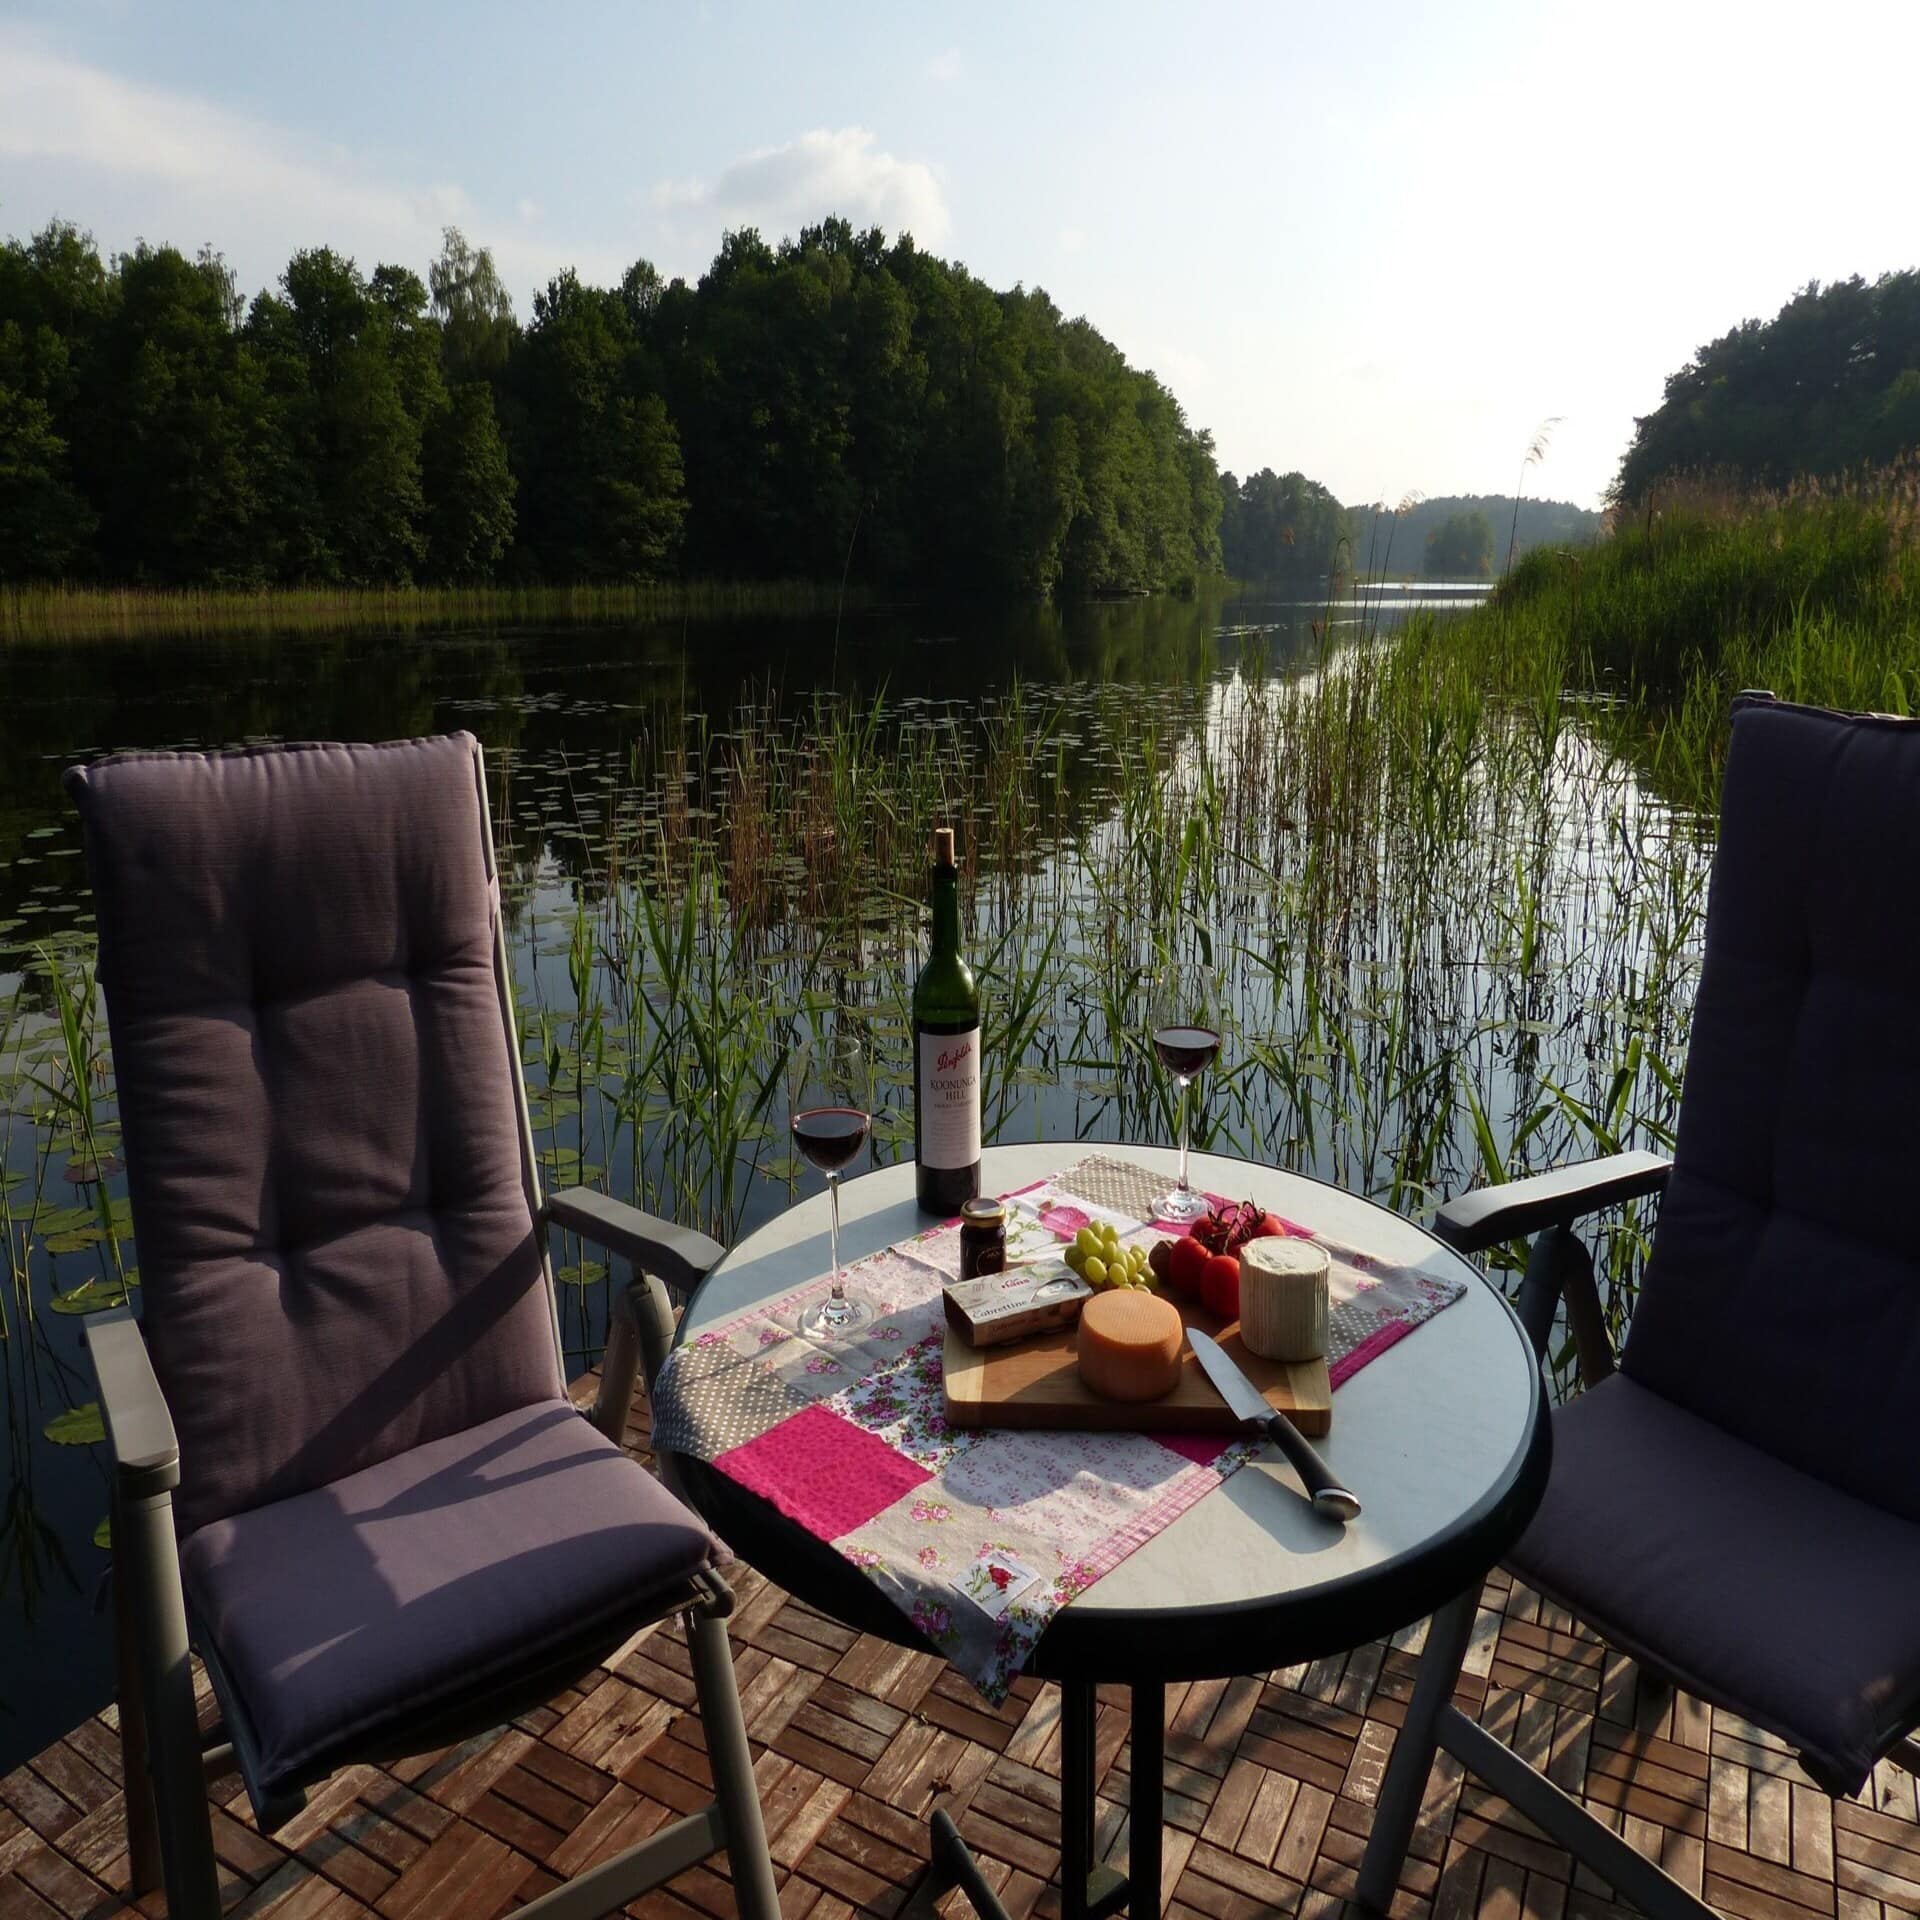 Terrasse direkt am Wasser, darauf 2 Stühle und ein Tisch mit Käseplatte und Rotwein.